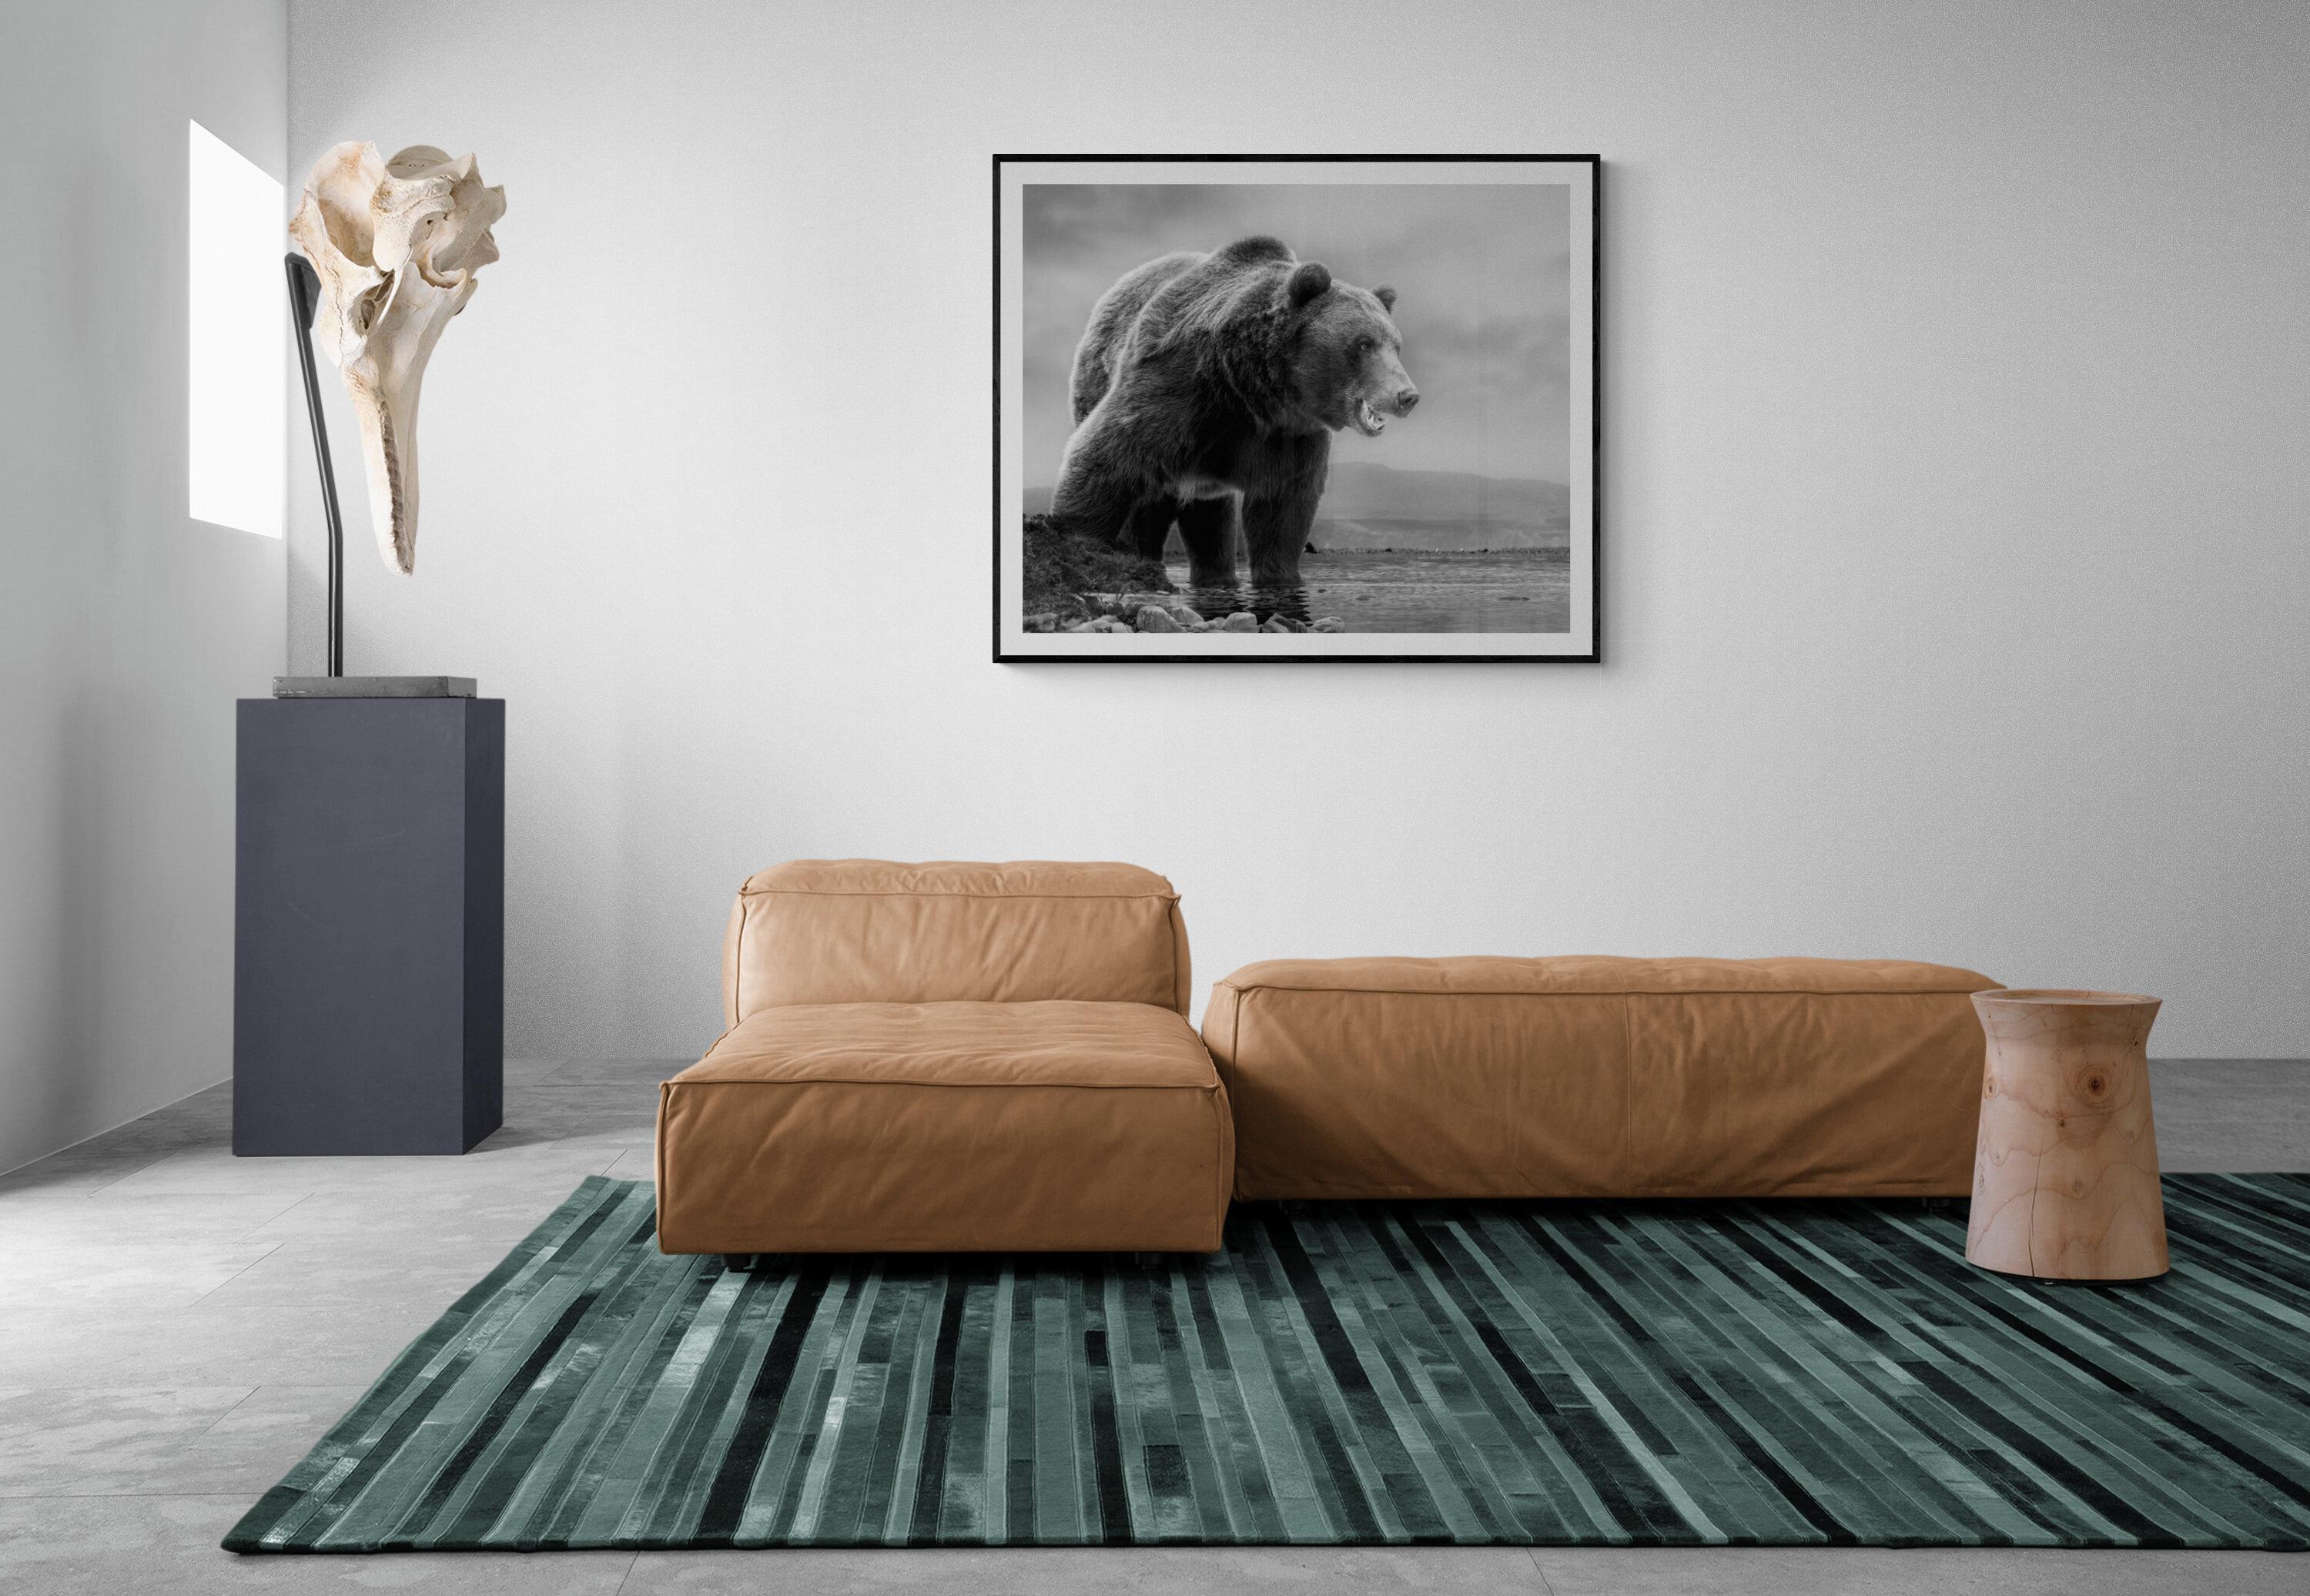 Dies ist eine zeitgenössische Fotografie eines Kodiakbären.  
Dies wurde 2019 auf Kodiak Island gedreht. 
36x48 Auflage von 12
Gesungen und nummeriert
Archivalisches Pigmentpapier
Einrahmung verfügbar. Erkundigen Sie sich nach den Preisen. 


Shane